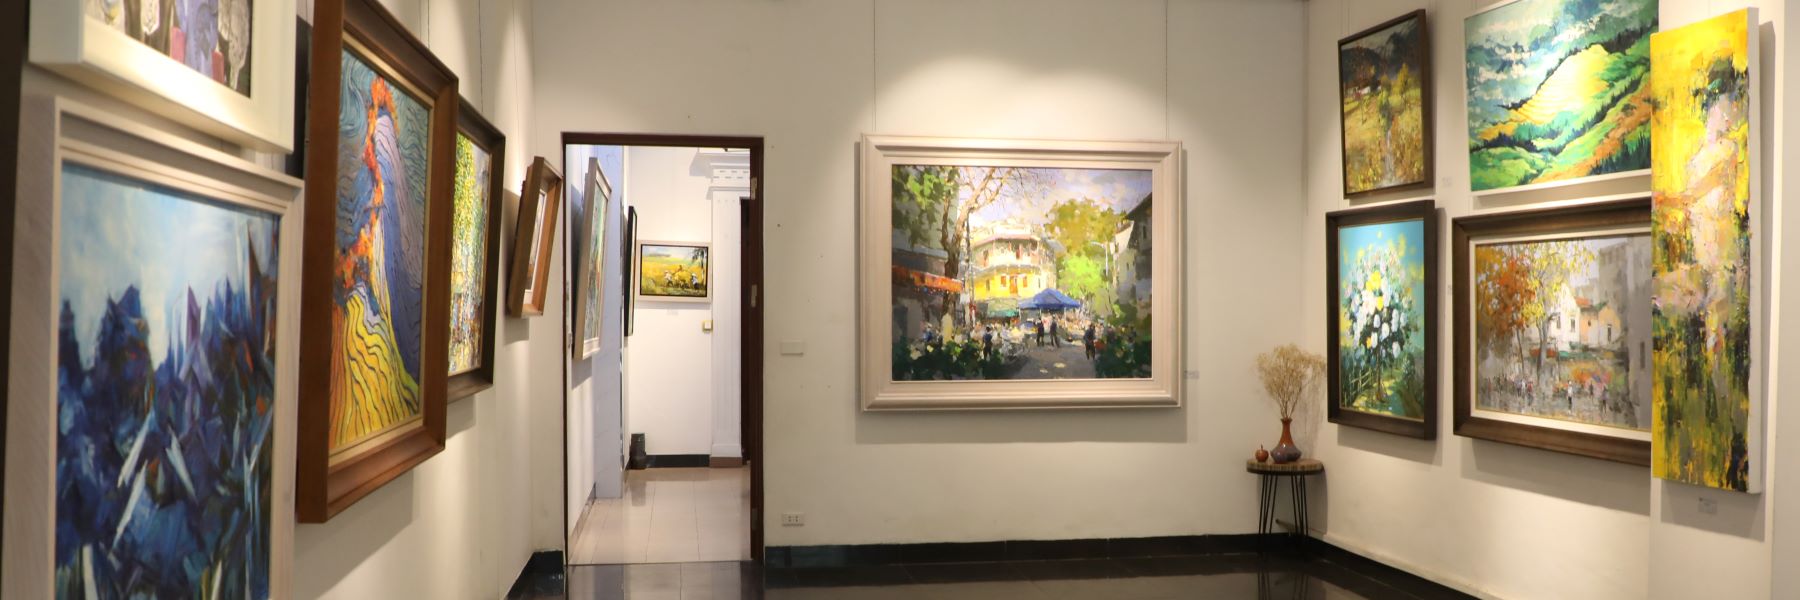 nguyen art gallery phòng trưng bày tranh nghệ thuật nguyên bản và cao cấp